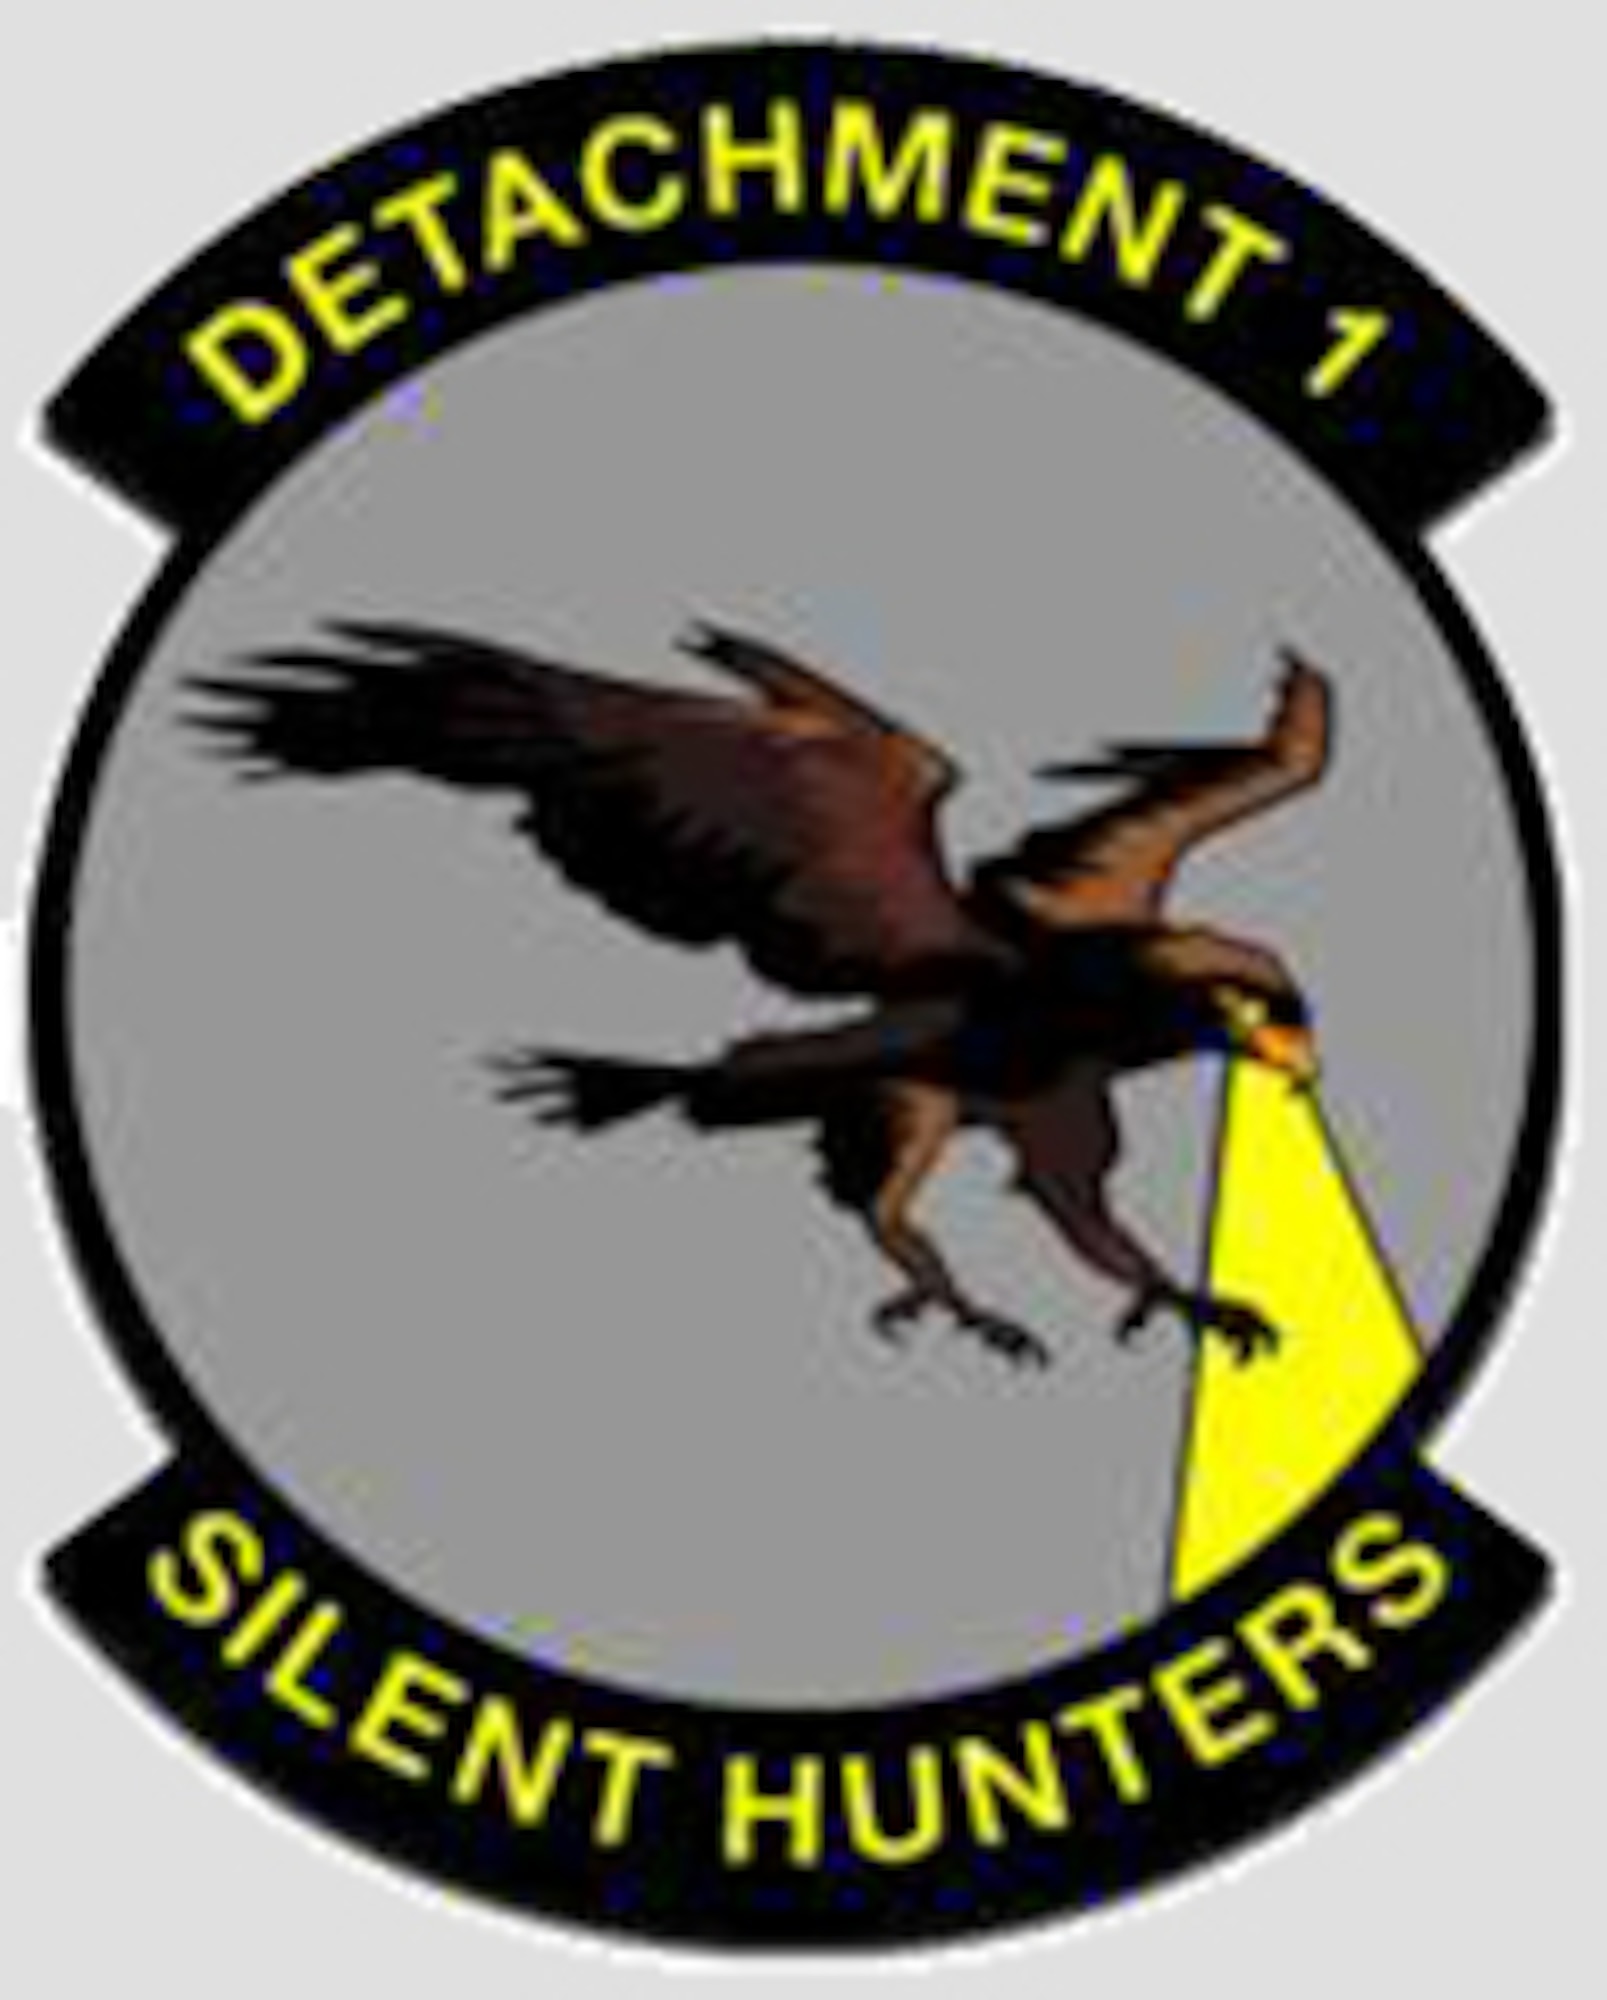 69th Reconnaissance Group/Det 1